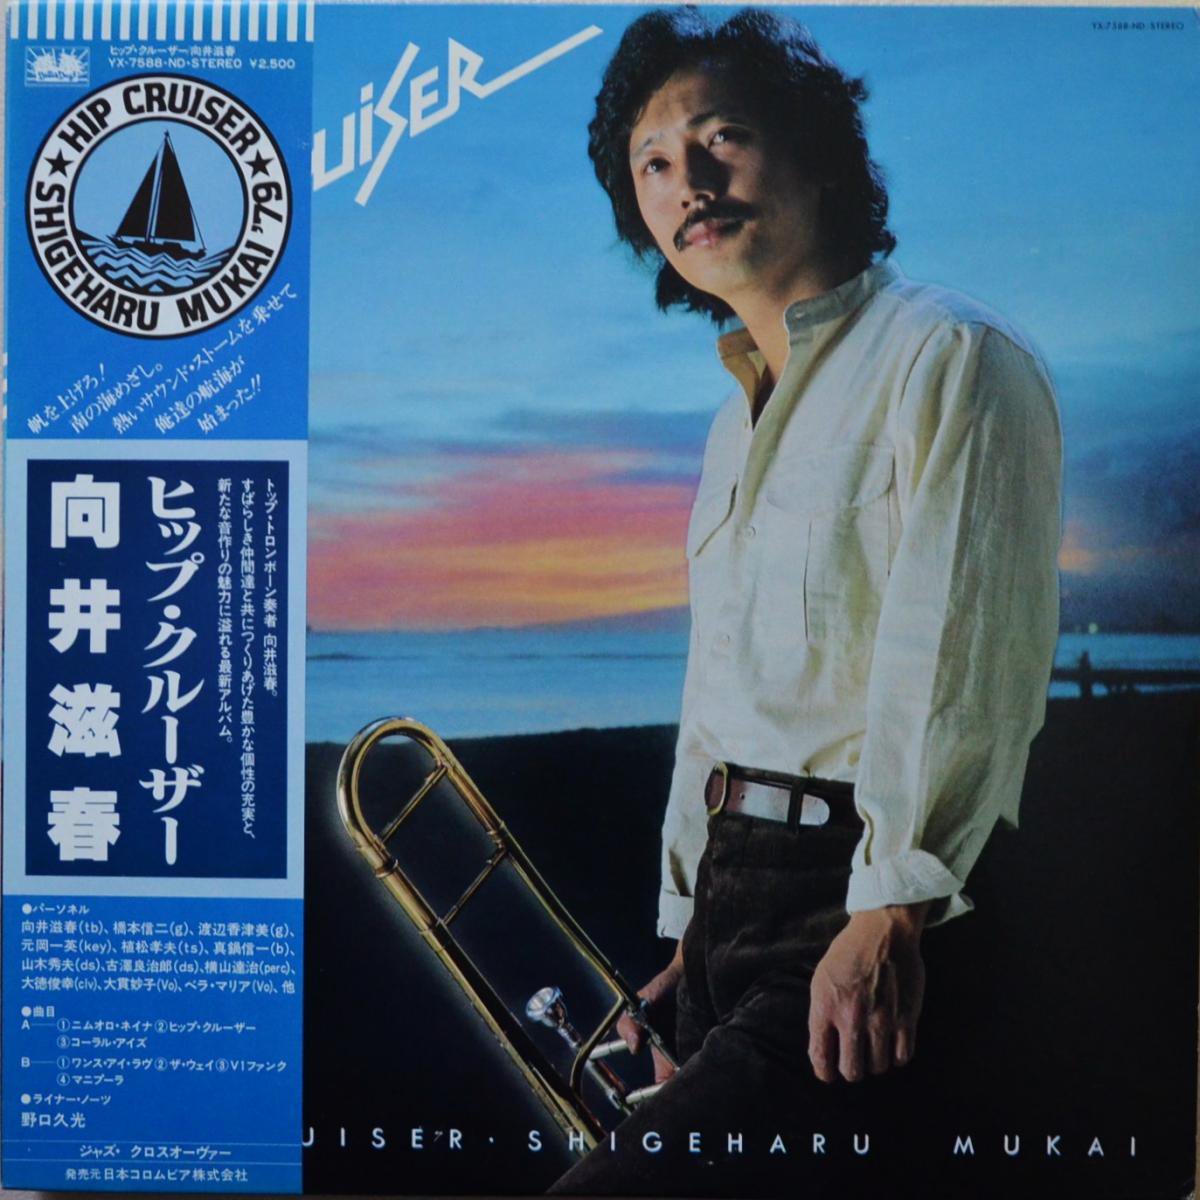 向井滋春 SHIGEHARU MUKAI / HIP CRUISER (LP)